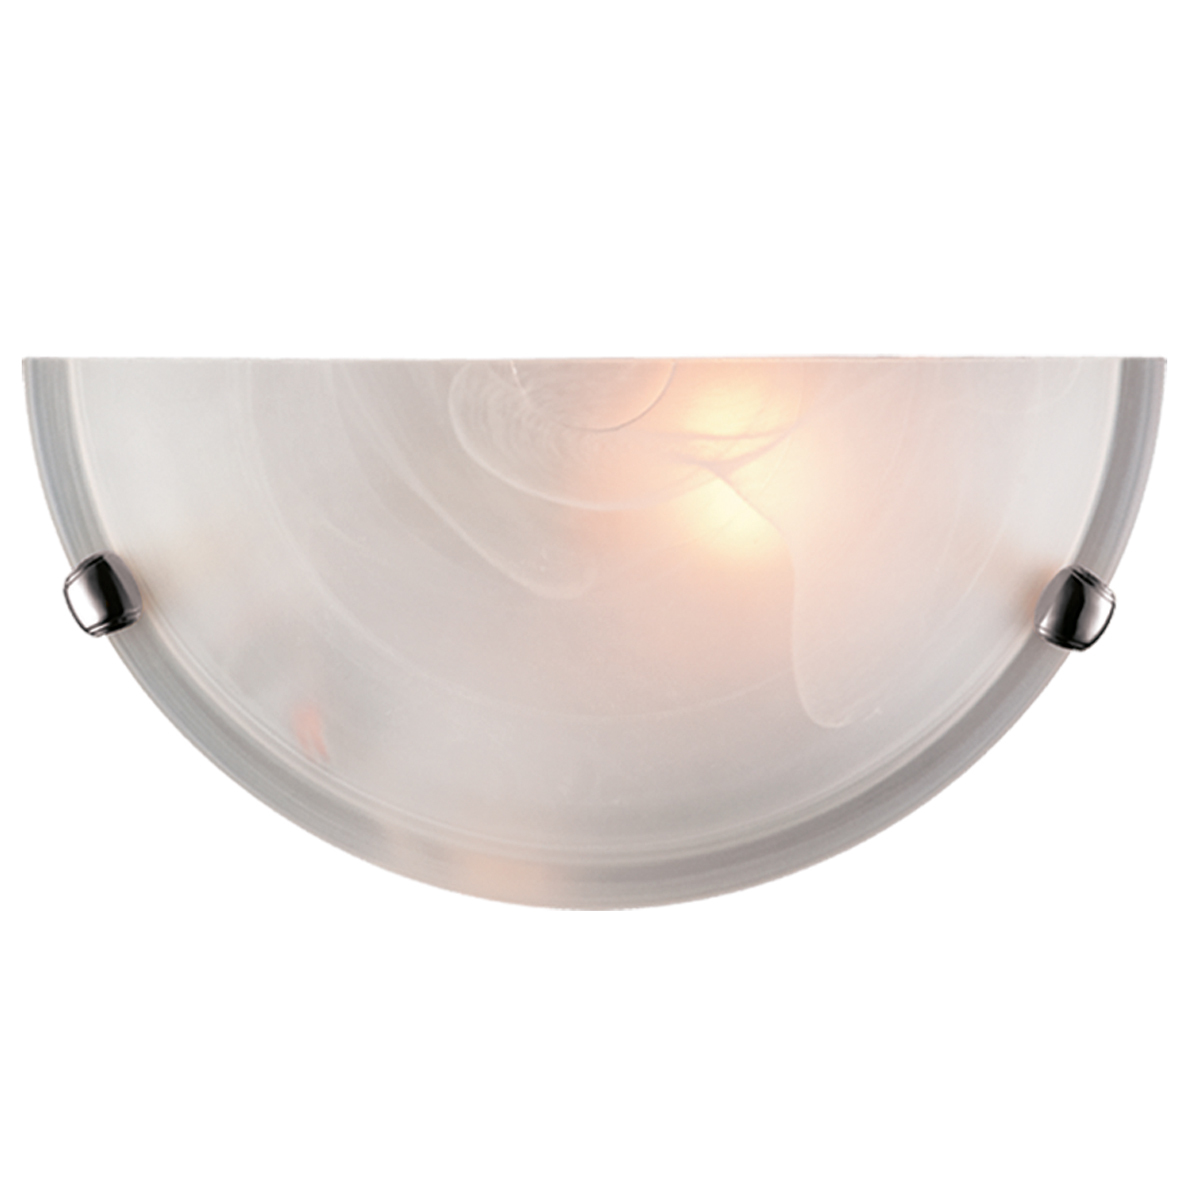 Настенный светильник Sonex Duna 053 хром, 1xE27x100W, хром, белый, металл, стекло - фото 1